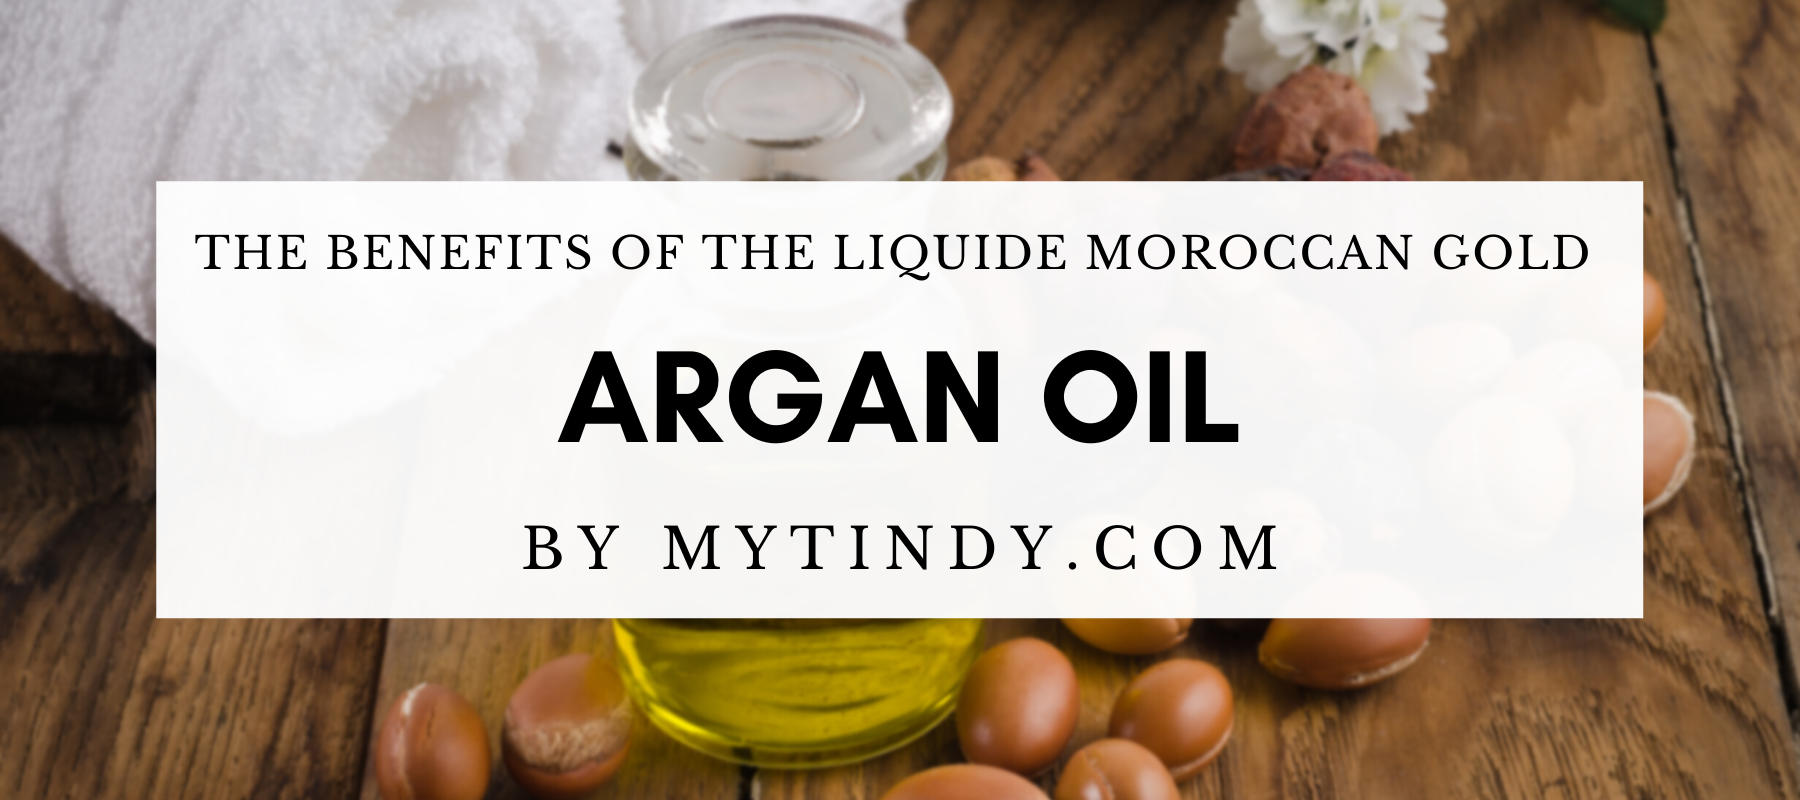 Moroccan Argan oil